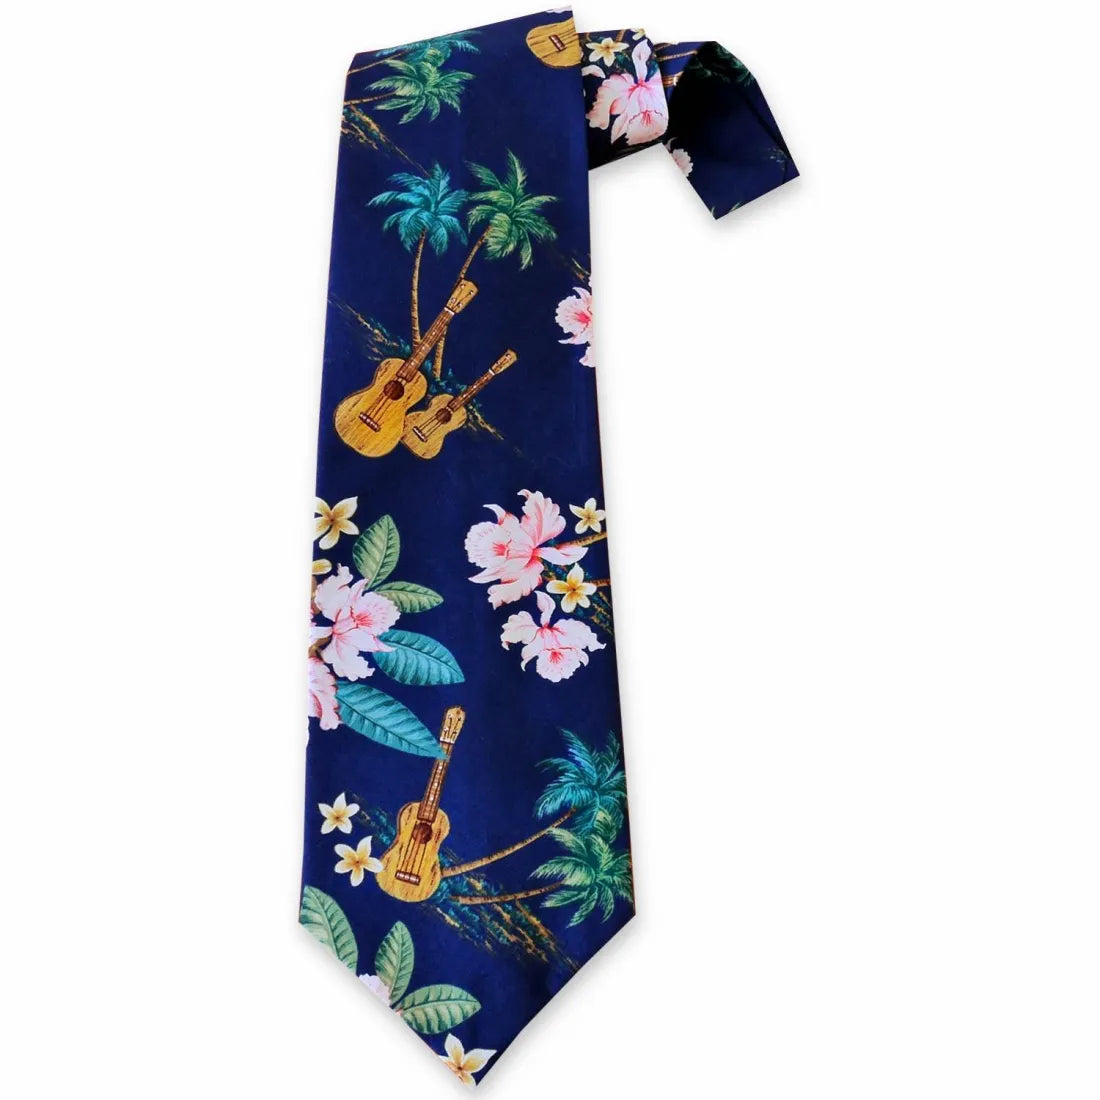 Ukulele Blue Hawaiian Necktie - Made In Hawaii